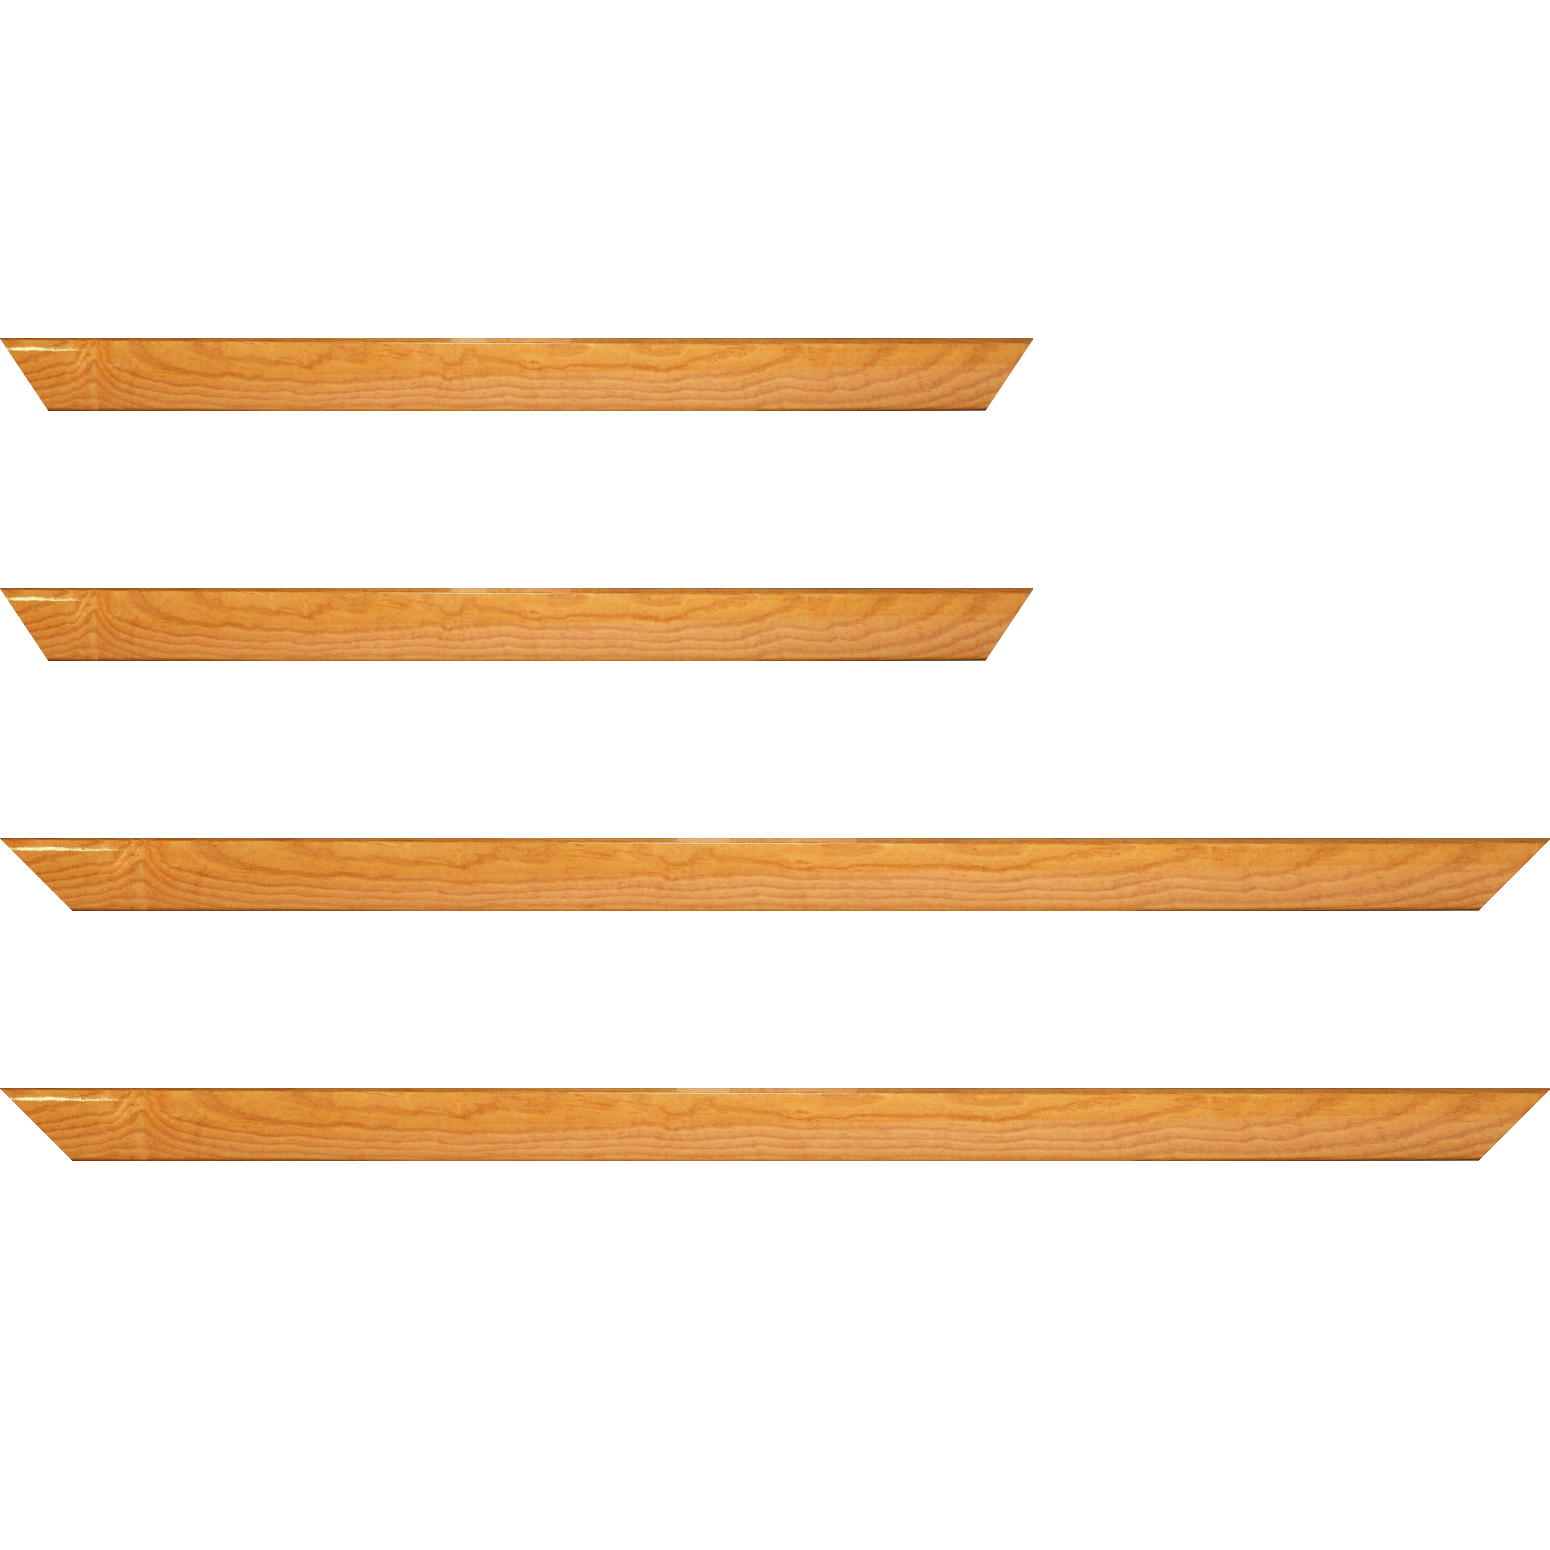 Baguette bois profil arrondi en pente plongeant largeur 2.4cm couleur jaune moutarde finition vernis brillant,veine du bois  apparent (pin) , - 30x60